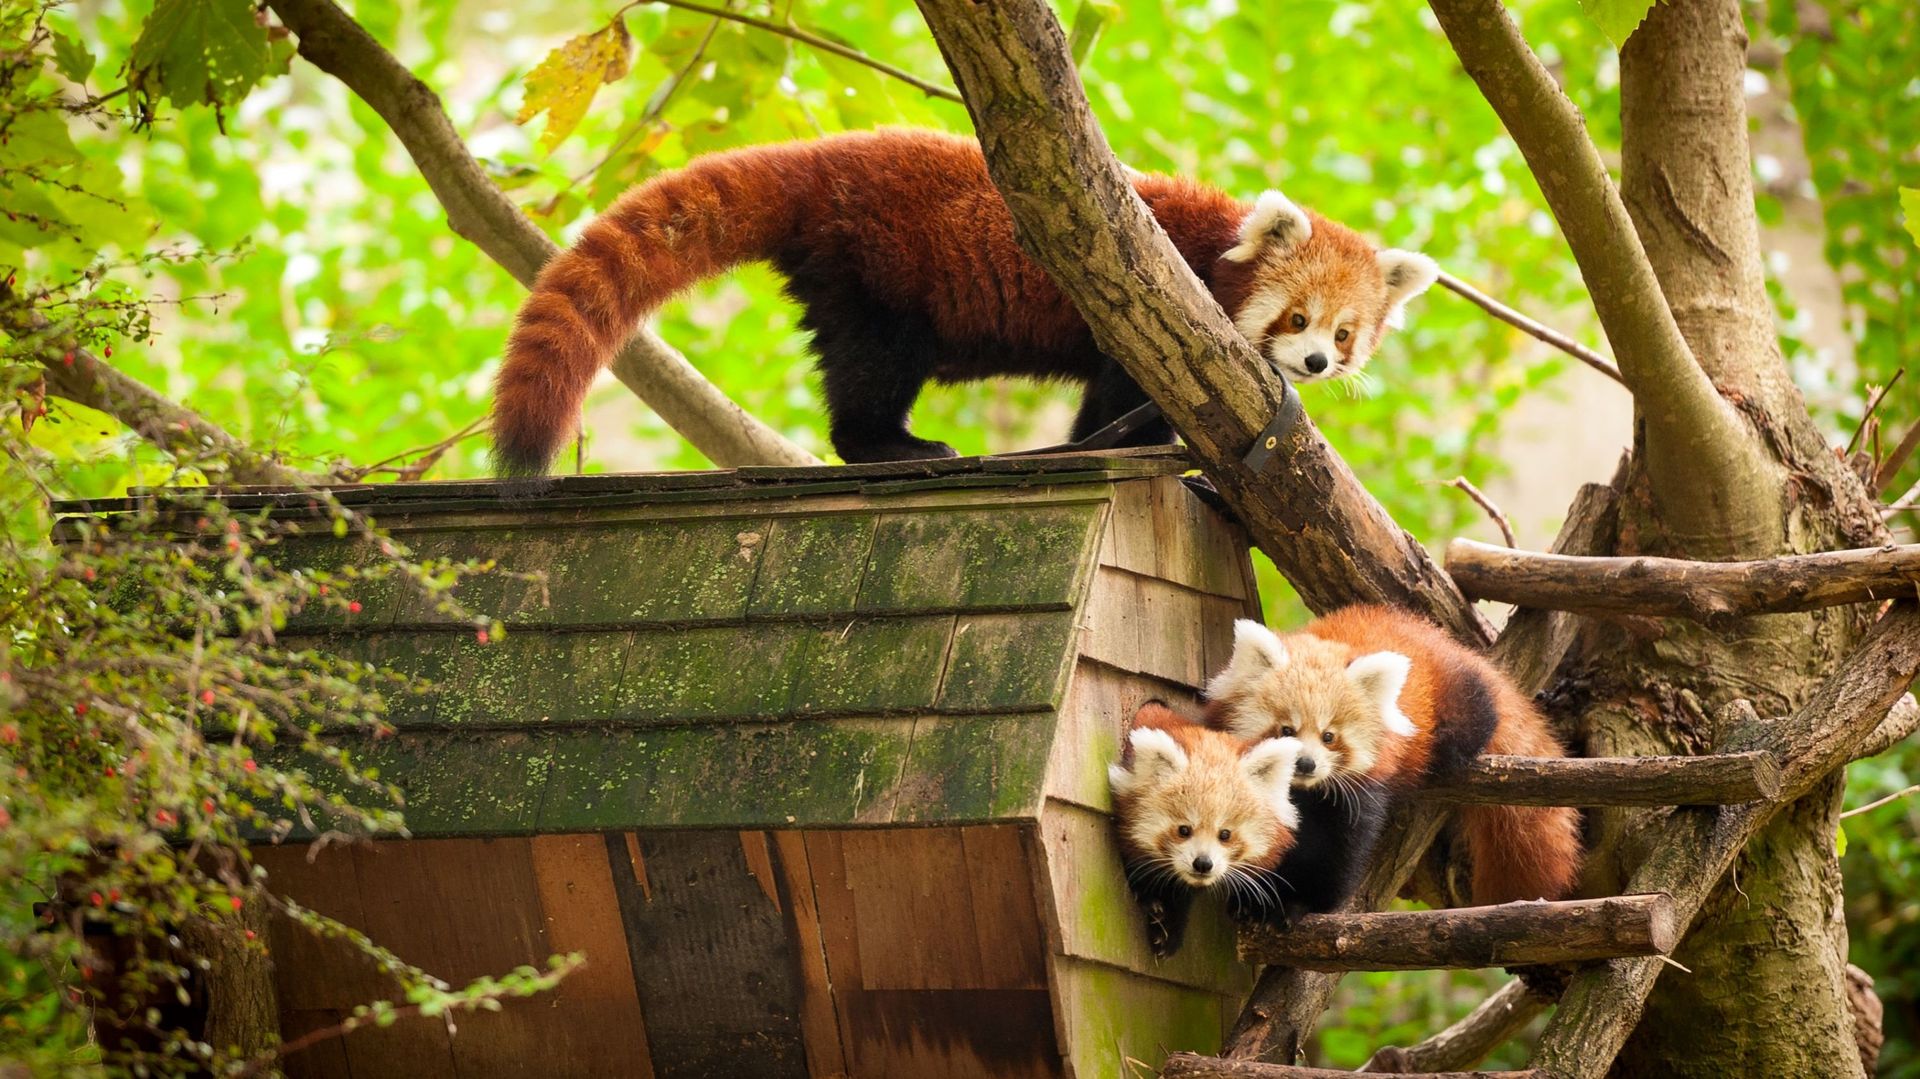 Le panda roux : comment et où vit-il ? Tout savoir sur le panda roux